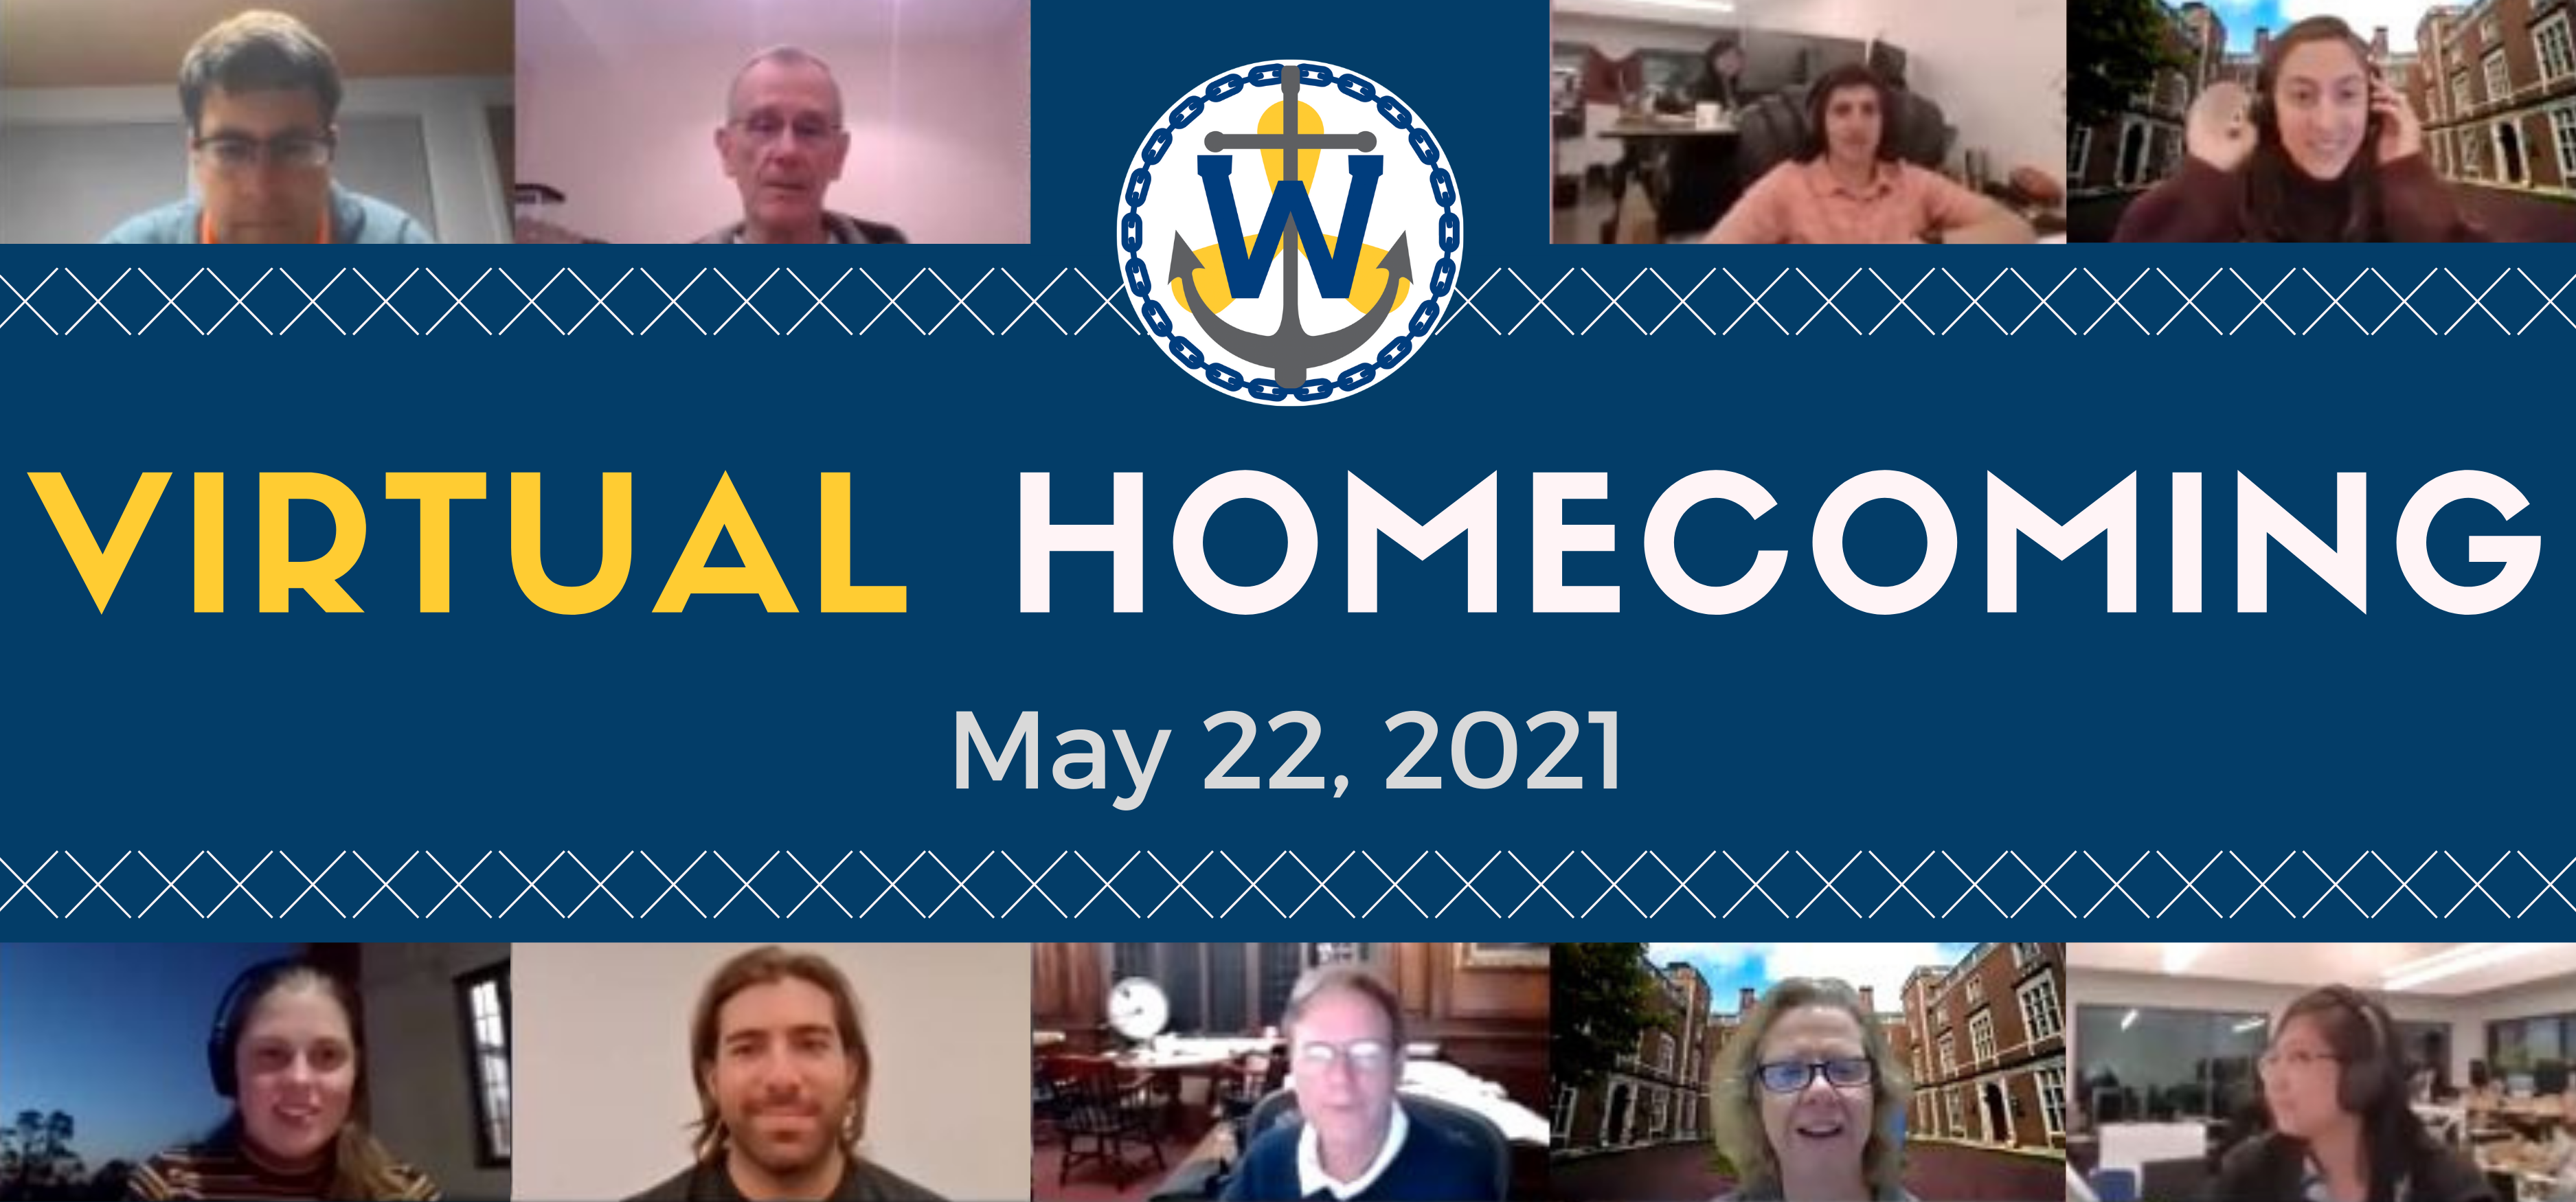 WAA Homecoming 2021